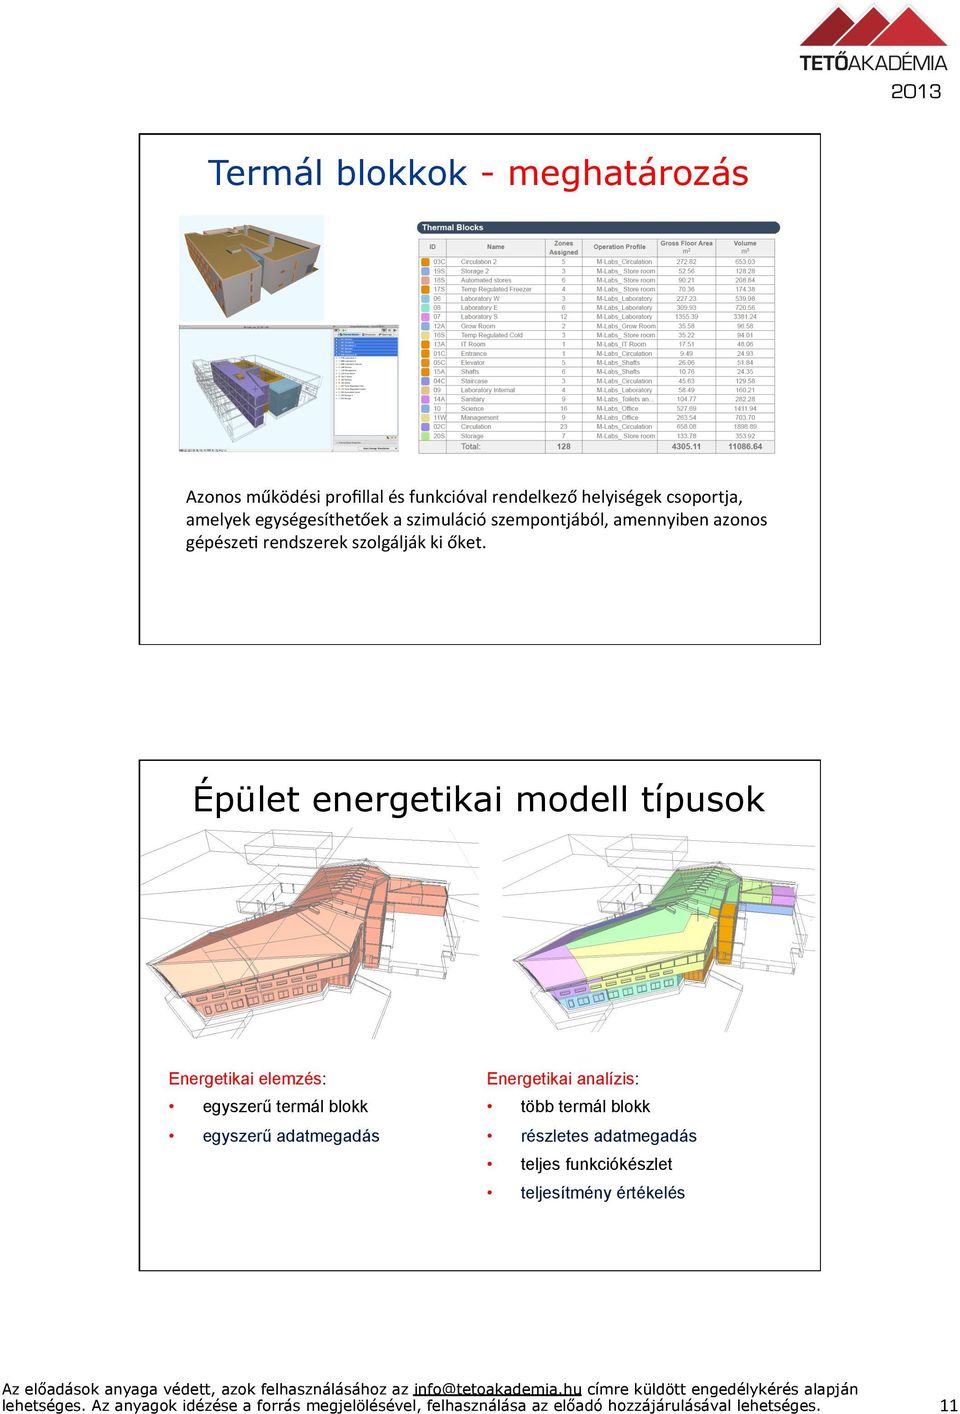 őket. Épület energetikai modell típusok Energetikai elemzés: egyszerű termál blokk egyszerű adatmegadás